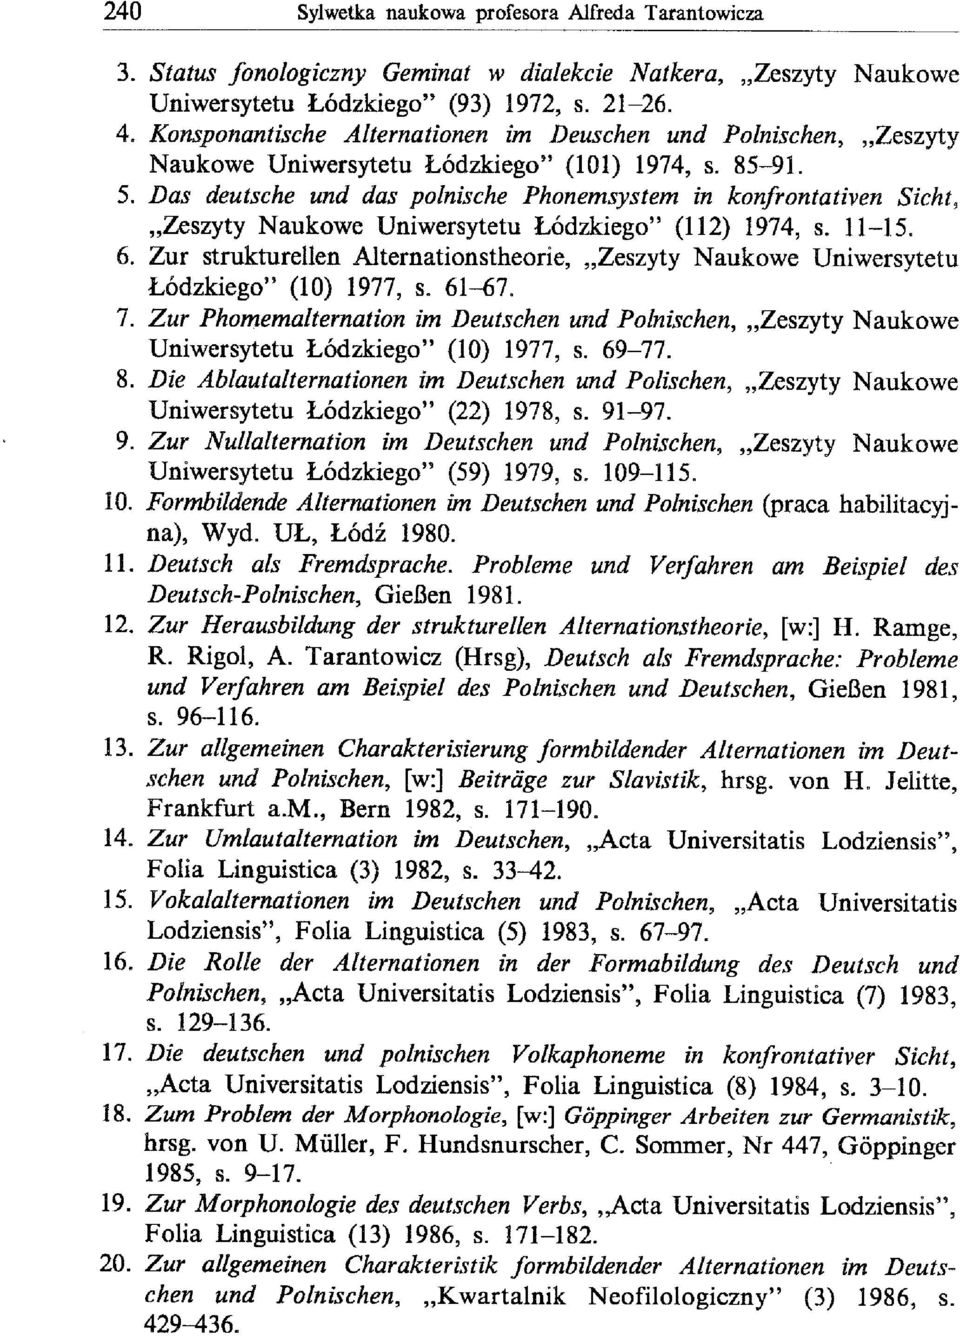 Das deutsche und das polnische Phonemsystem in konfrontativen Sicht, "Zeszyty Naukowe Uniwersytetu Łódzkiego" (112) 1974, s. 11-15. 6.